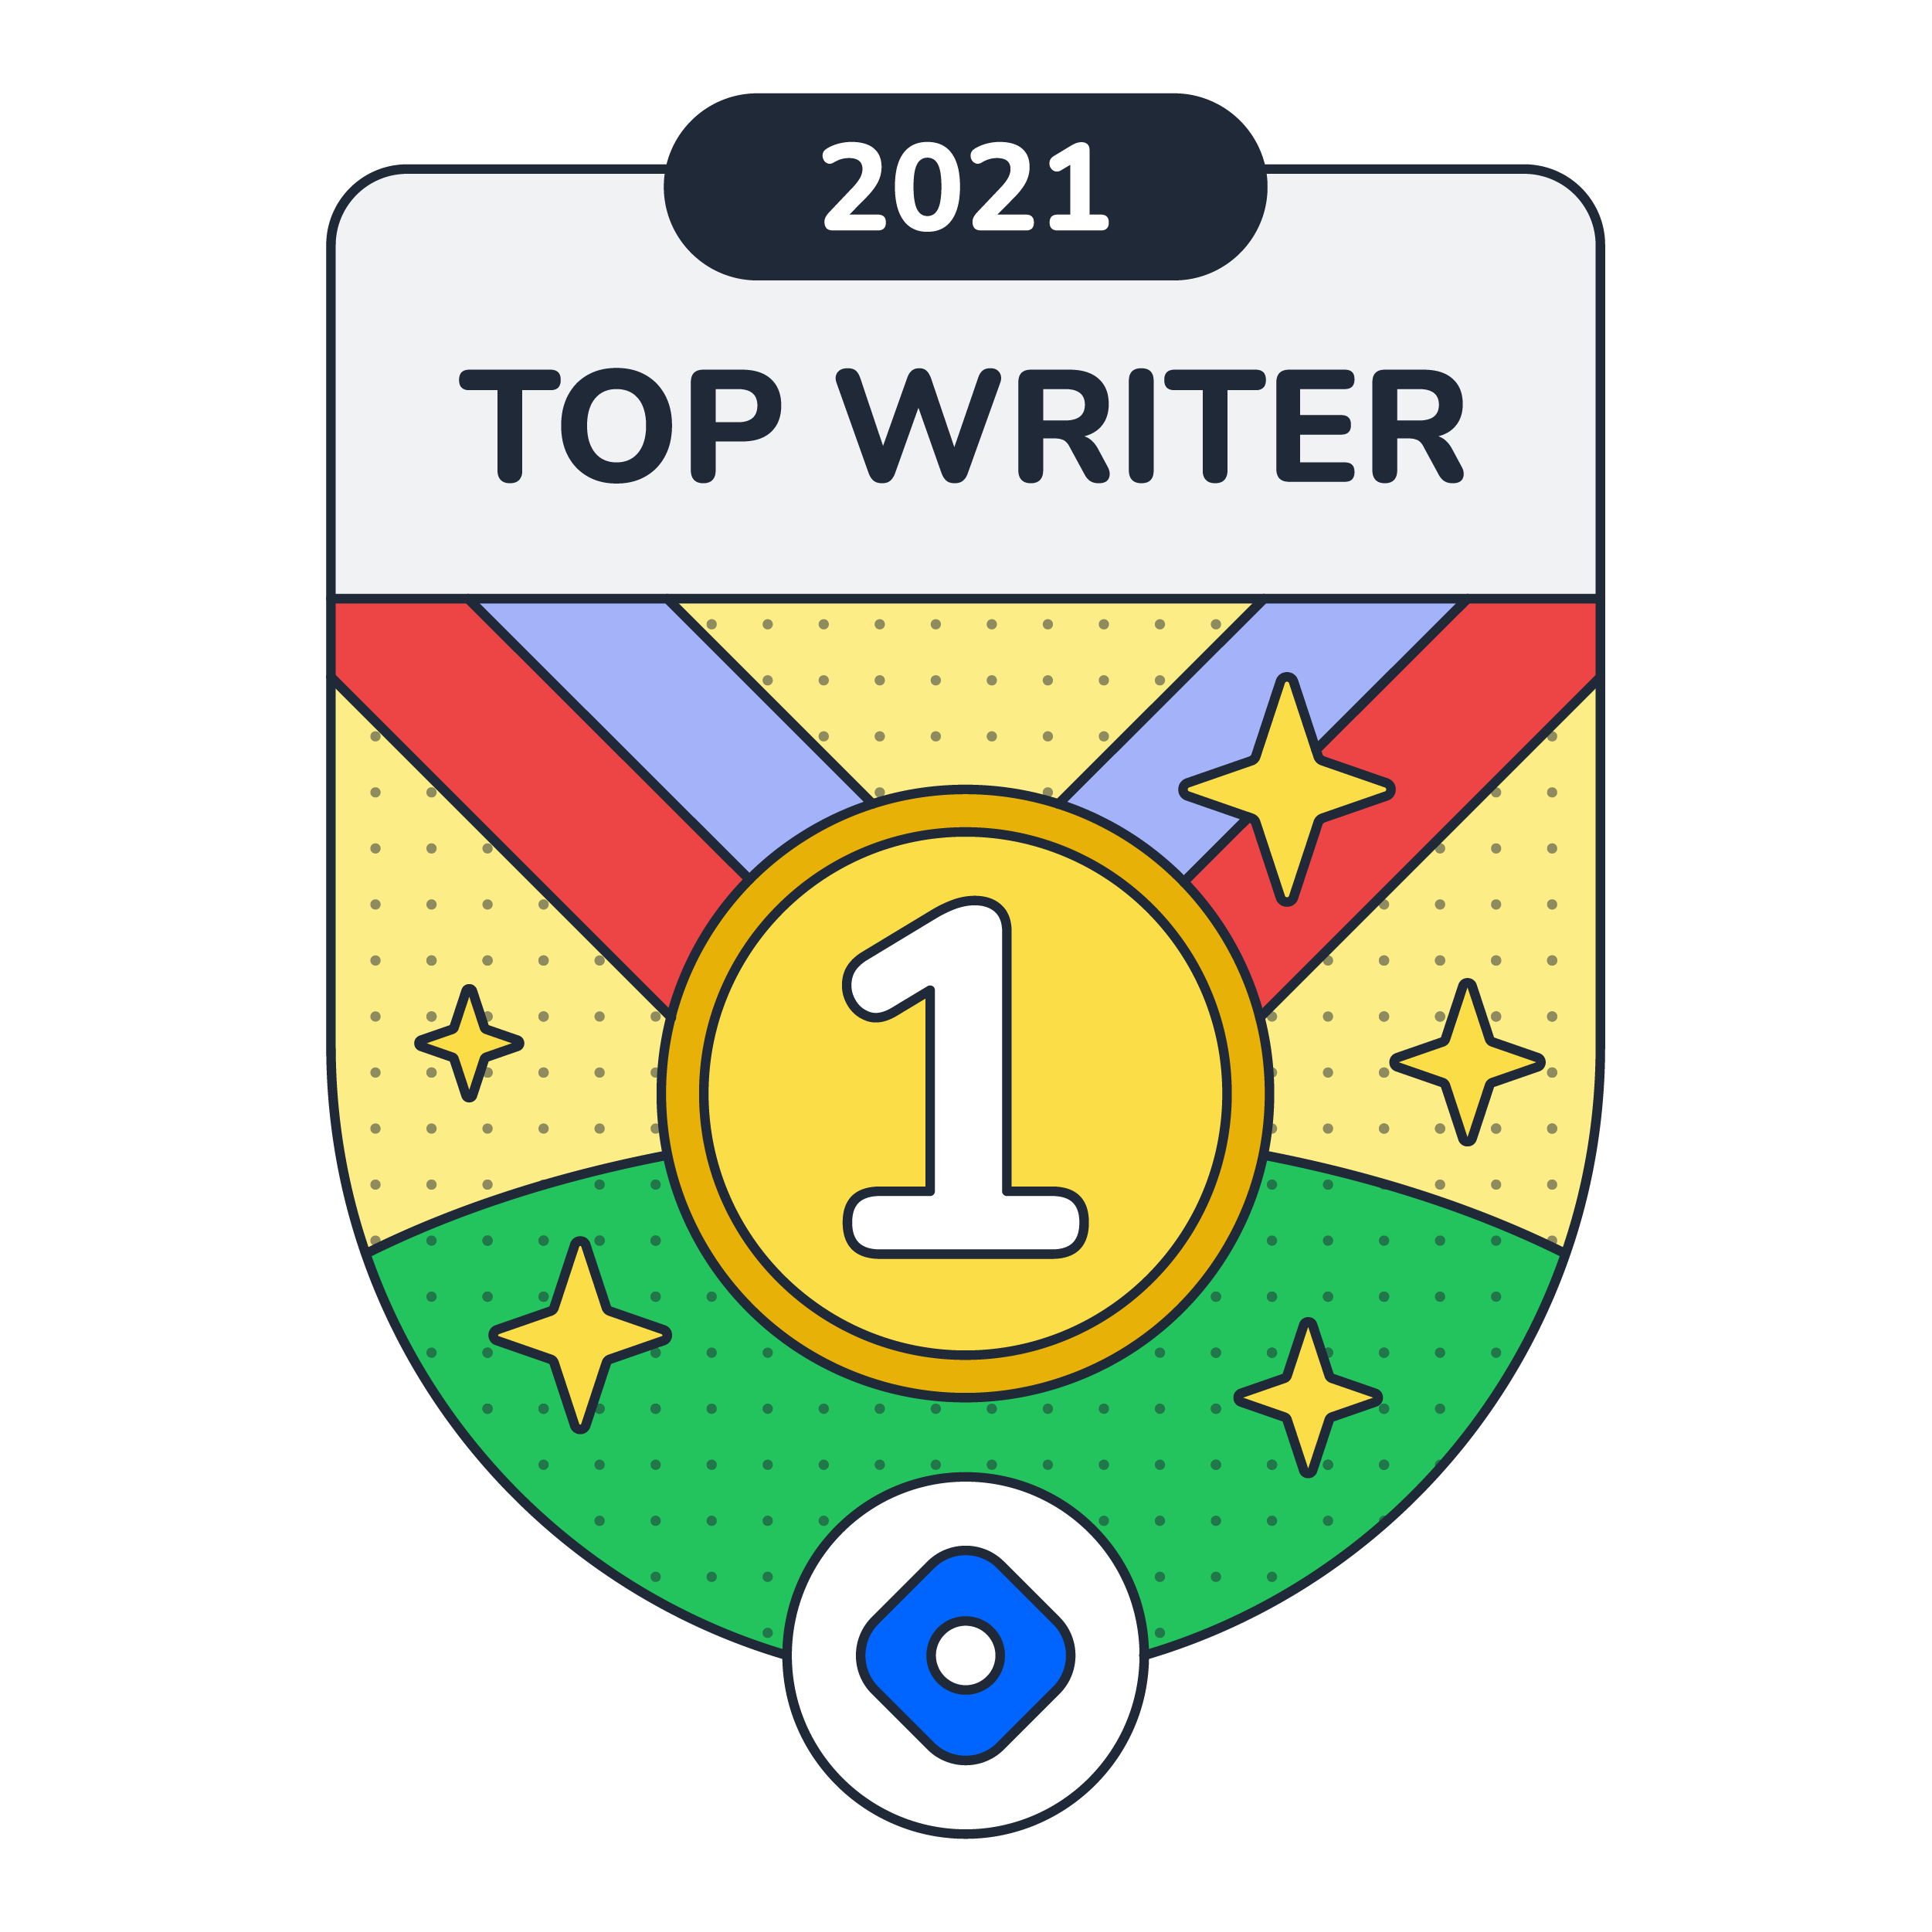 Top Writer 2021